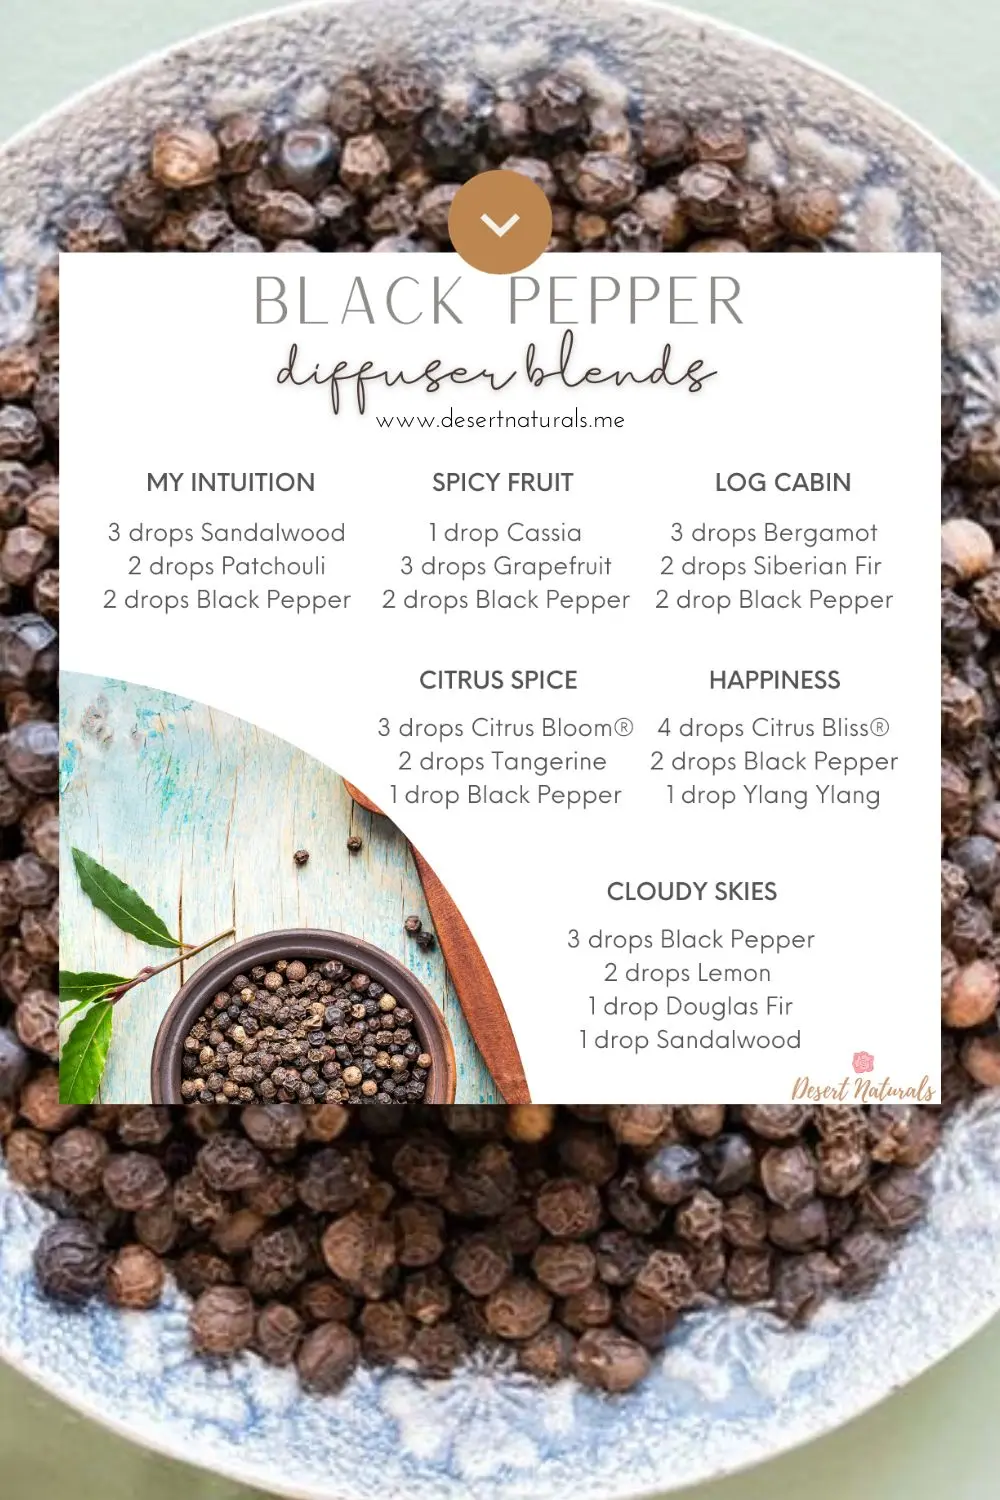 Black pepper essential oil diffuser blends